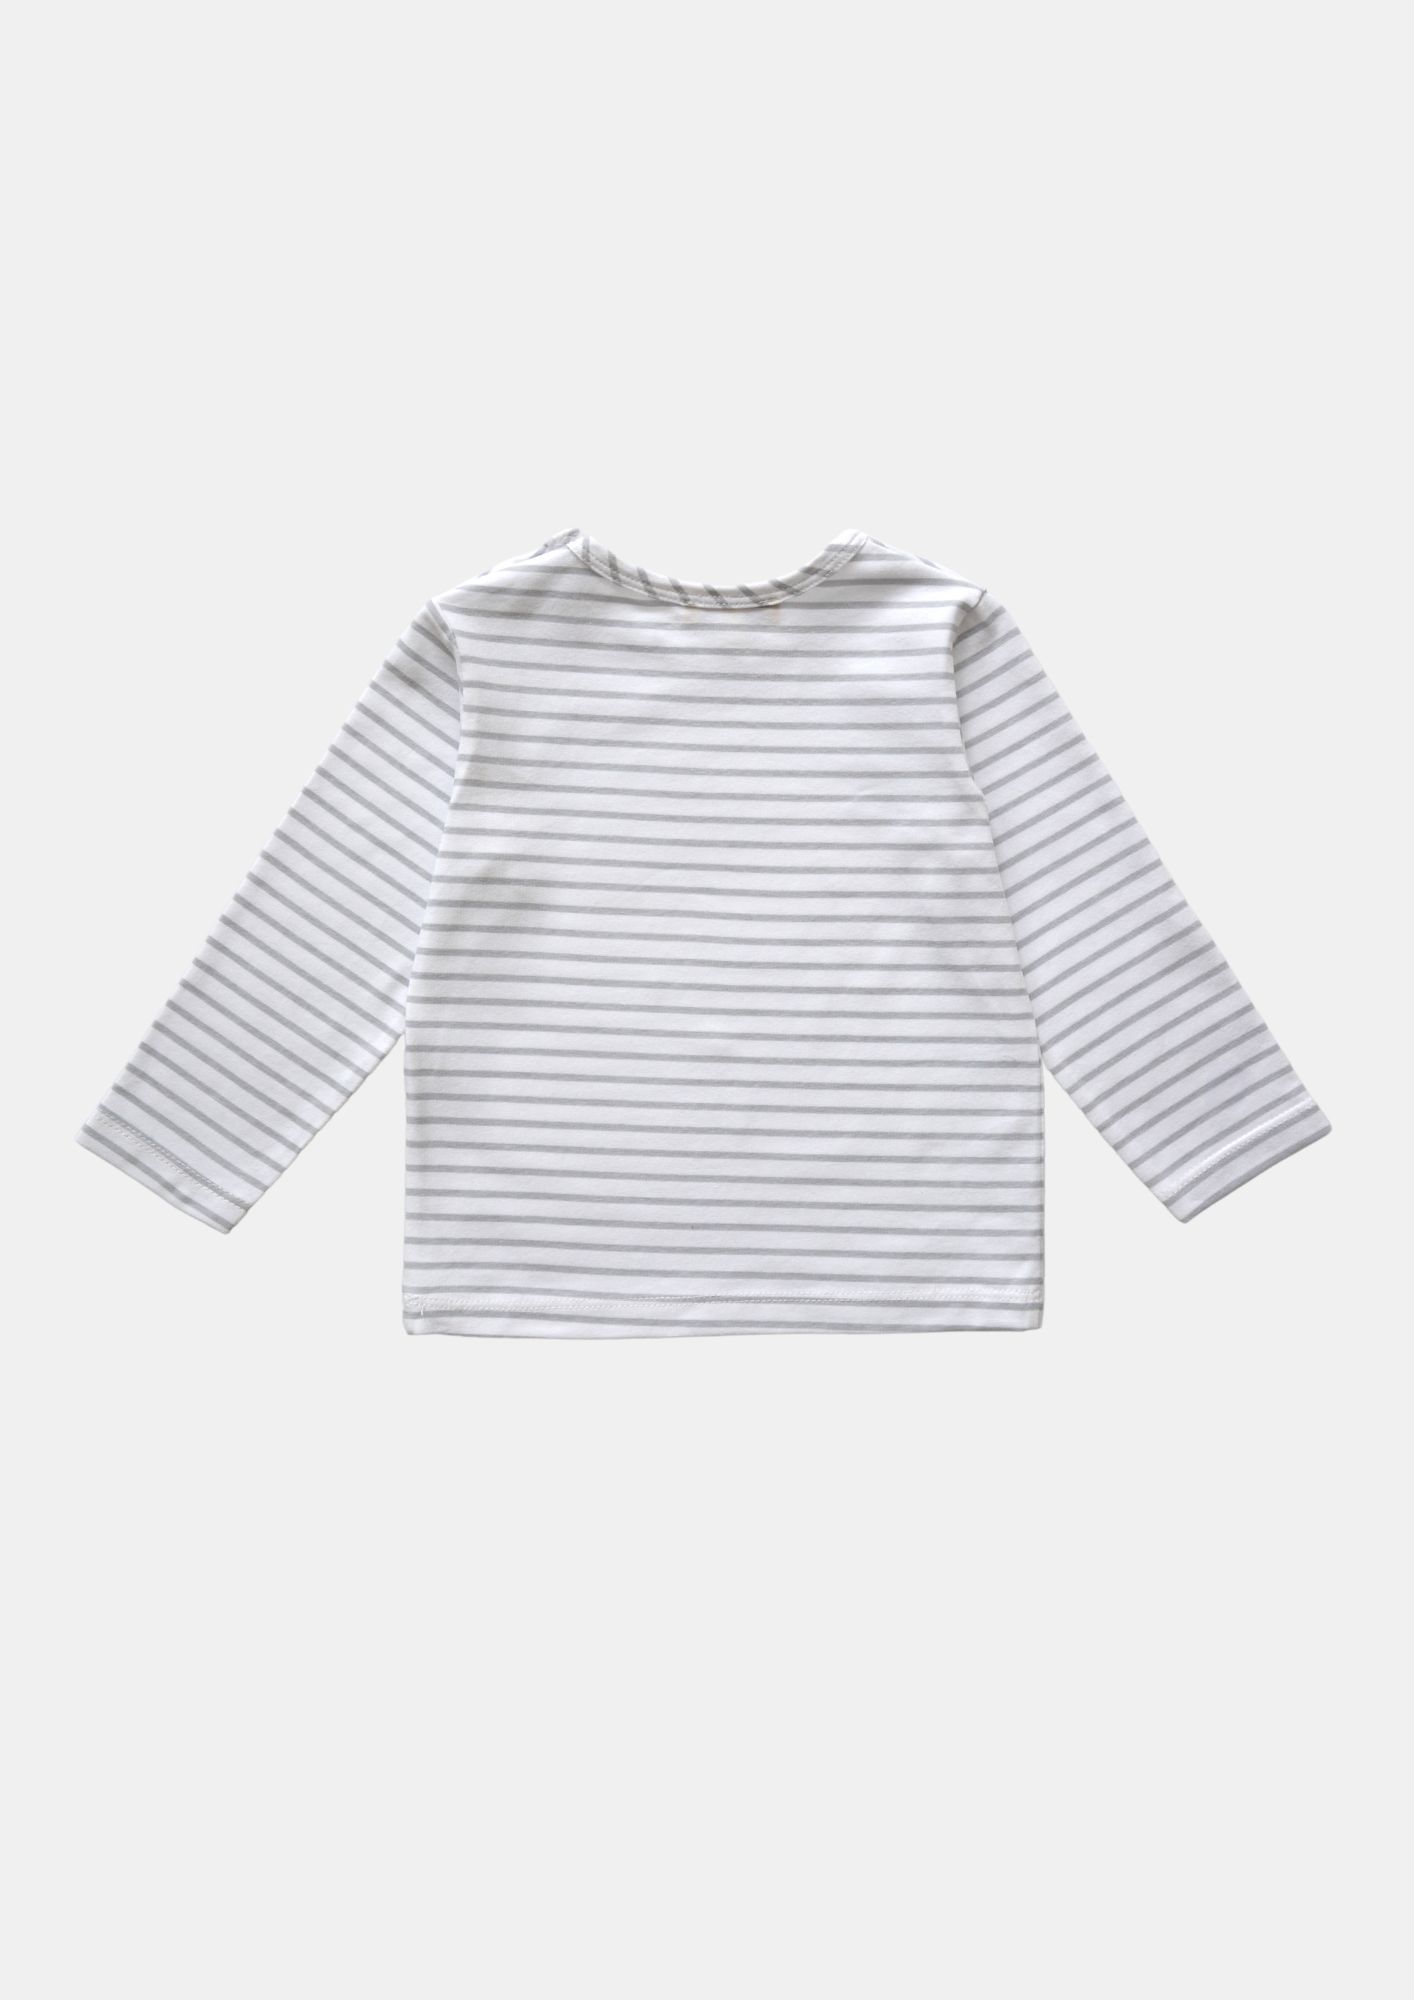 Baby /Kid Long Sleeves T-shirt Raccoon Print: 2-3Y